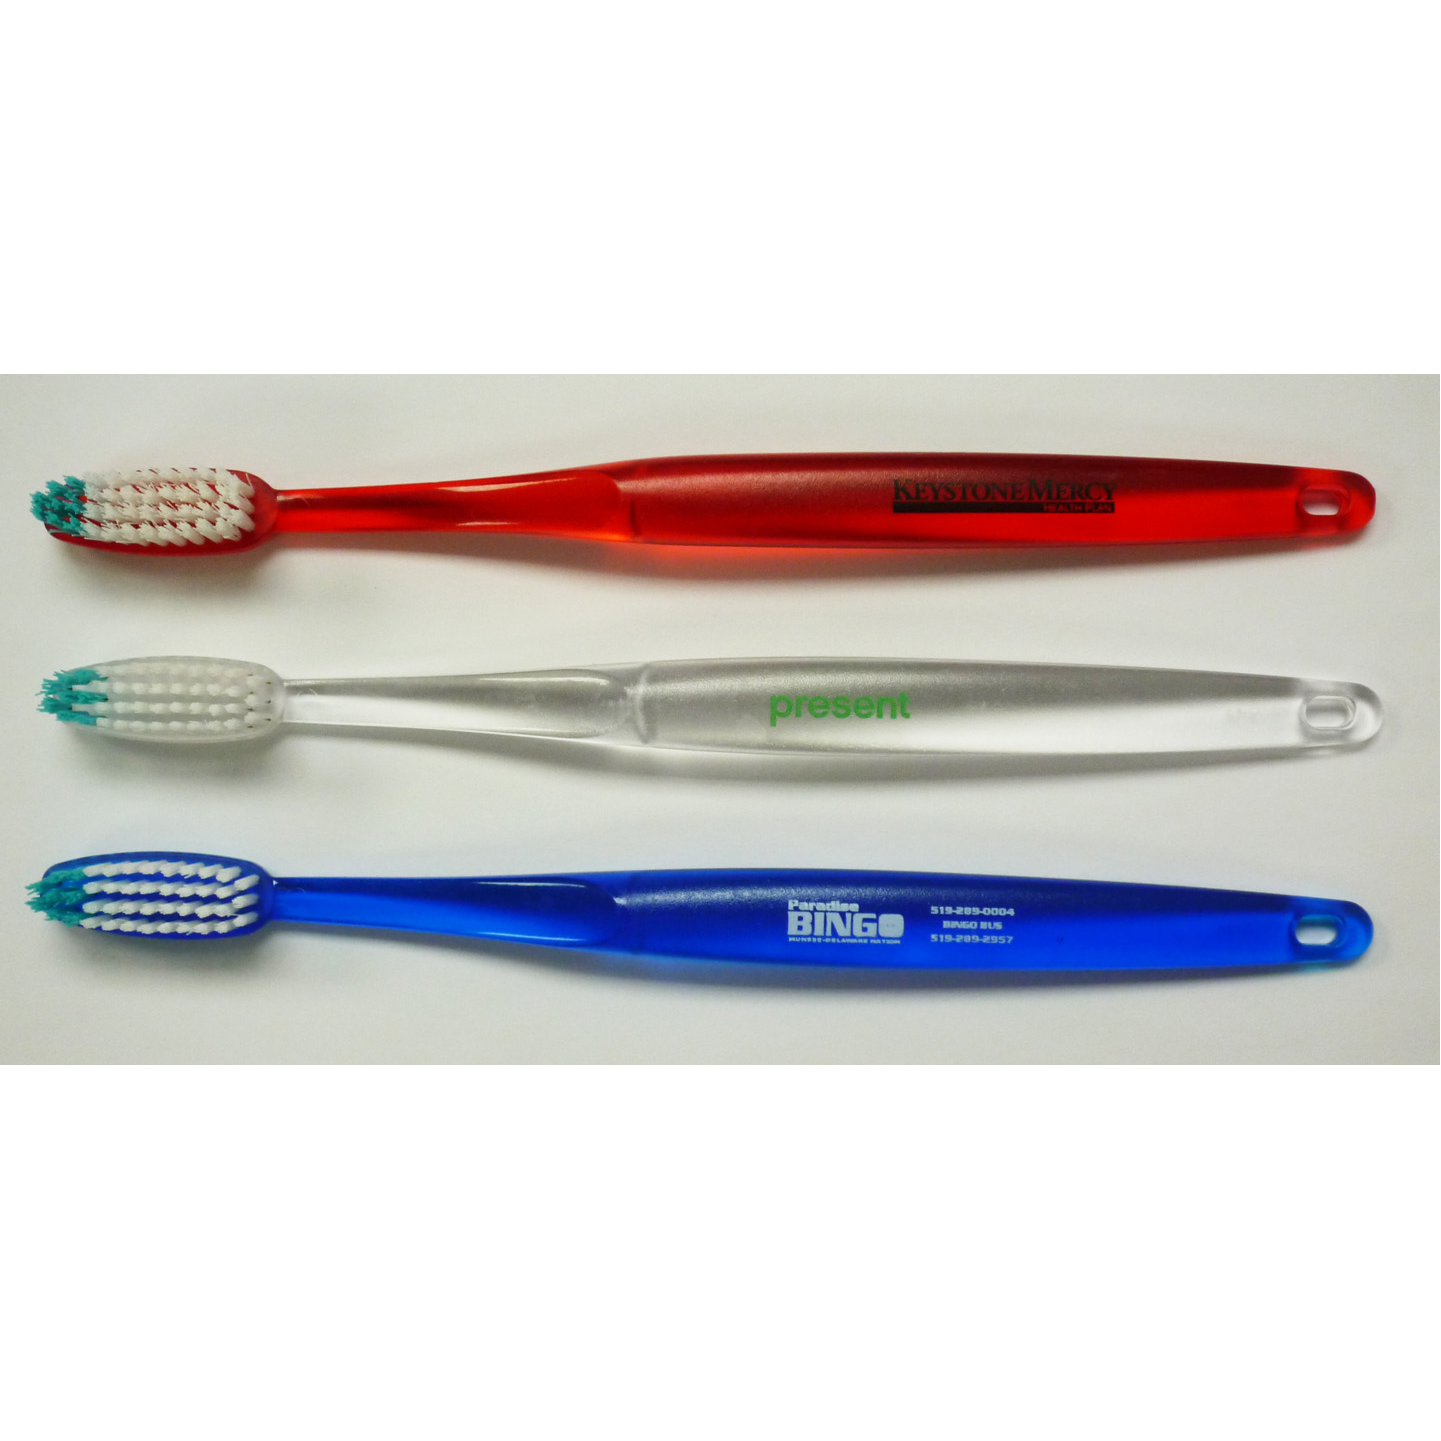 Adult Plastic Toothbrush